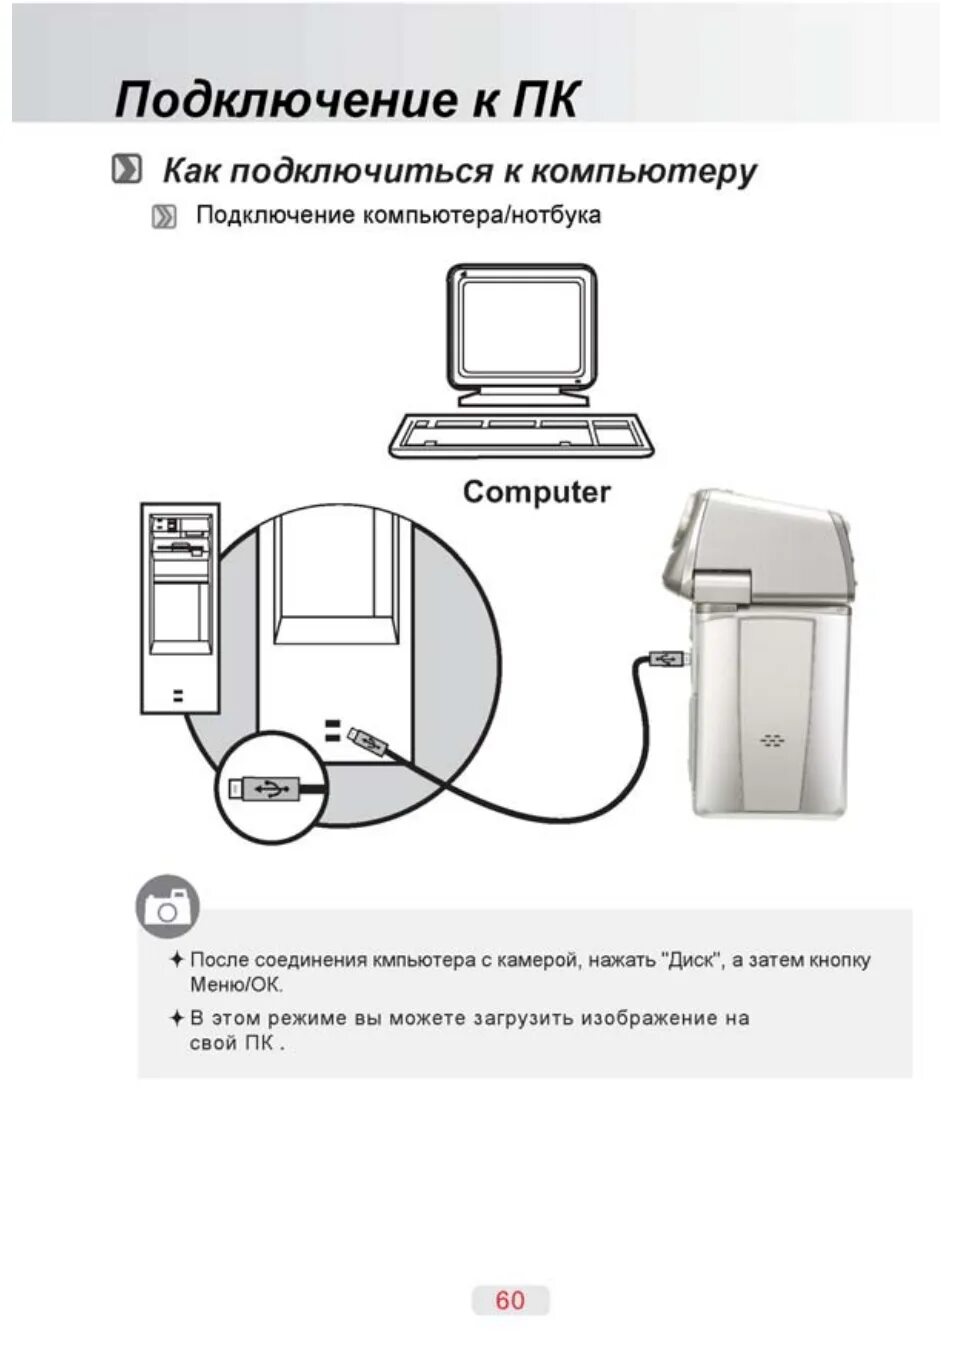 Подключения пк через телефон. Инструкция включения ПК ПК. Схема подключения компьютера. Схема как подключить компьютер. Как подсоединиться к компьютеру.